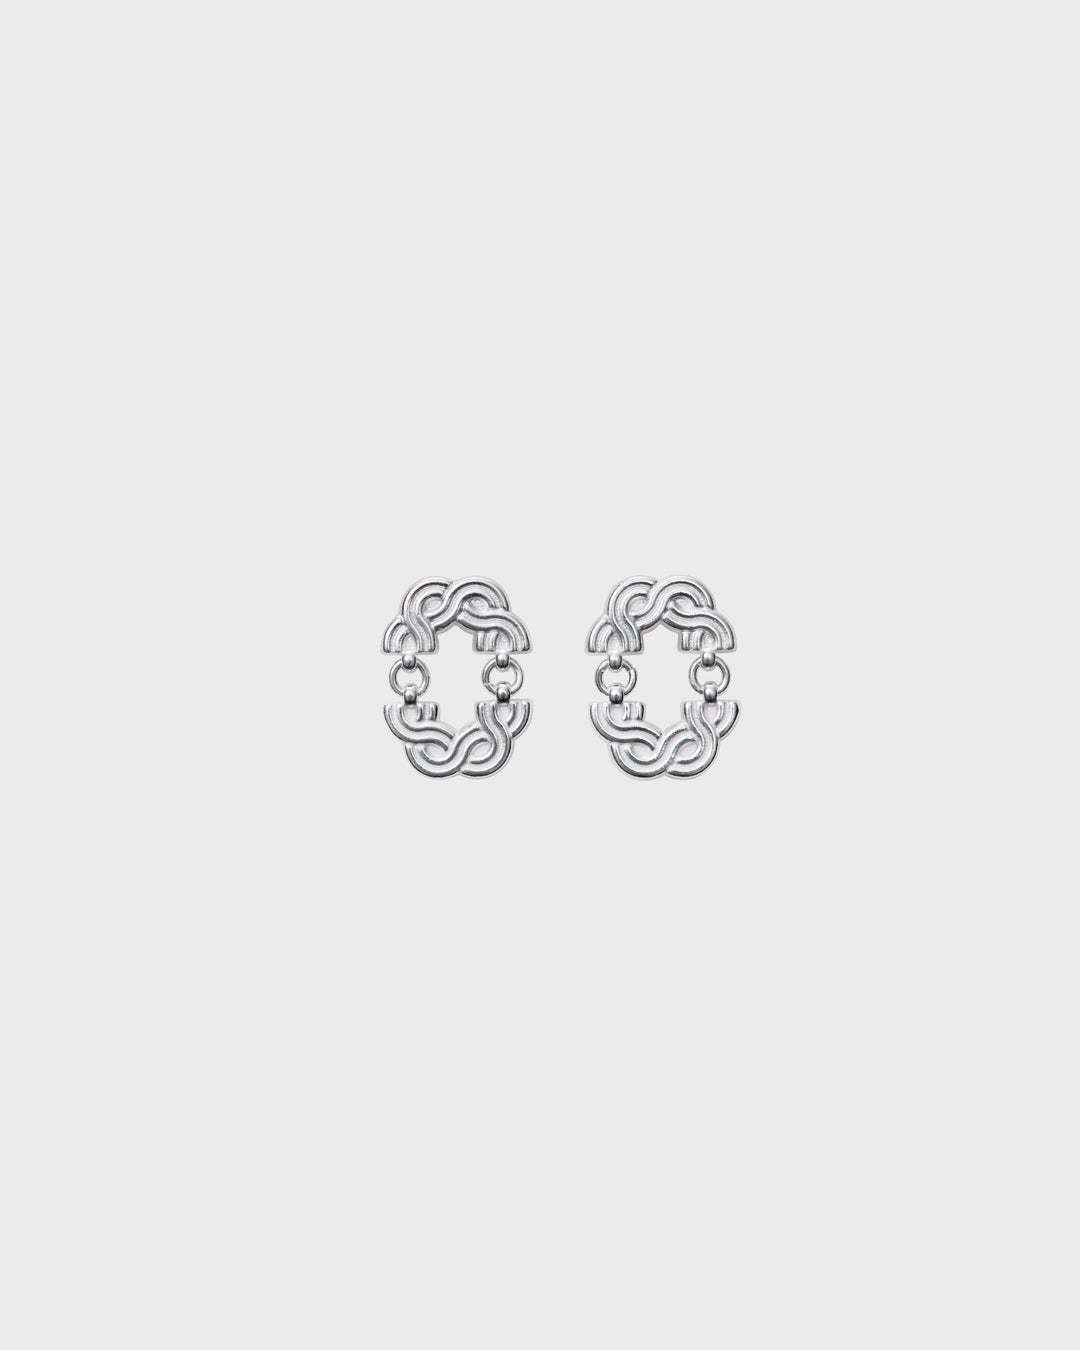 Louhetar earrings small silver half pair right